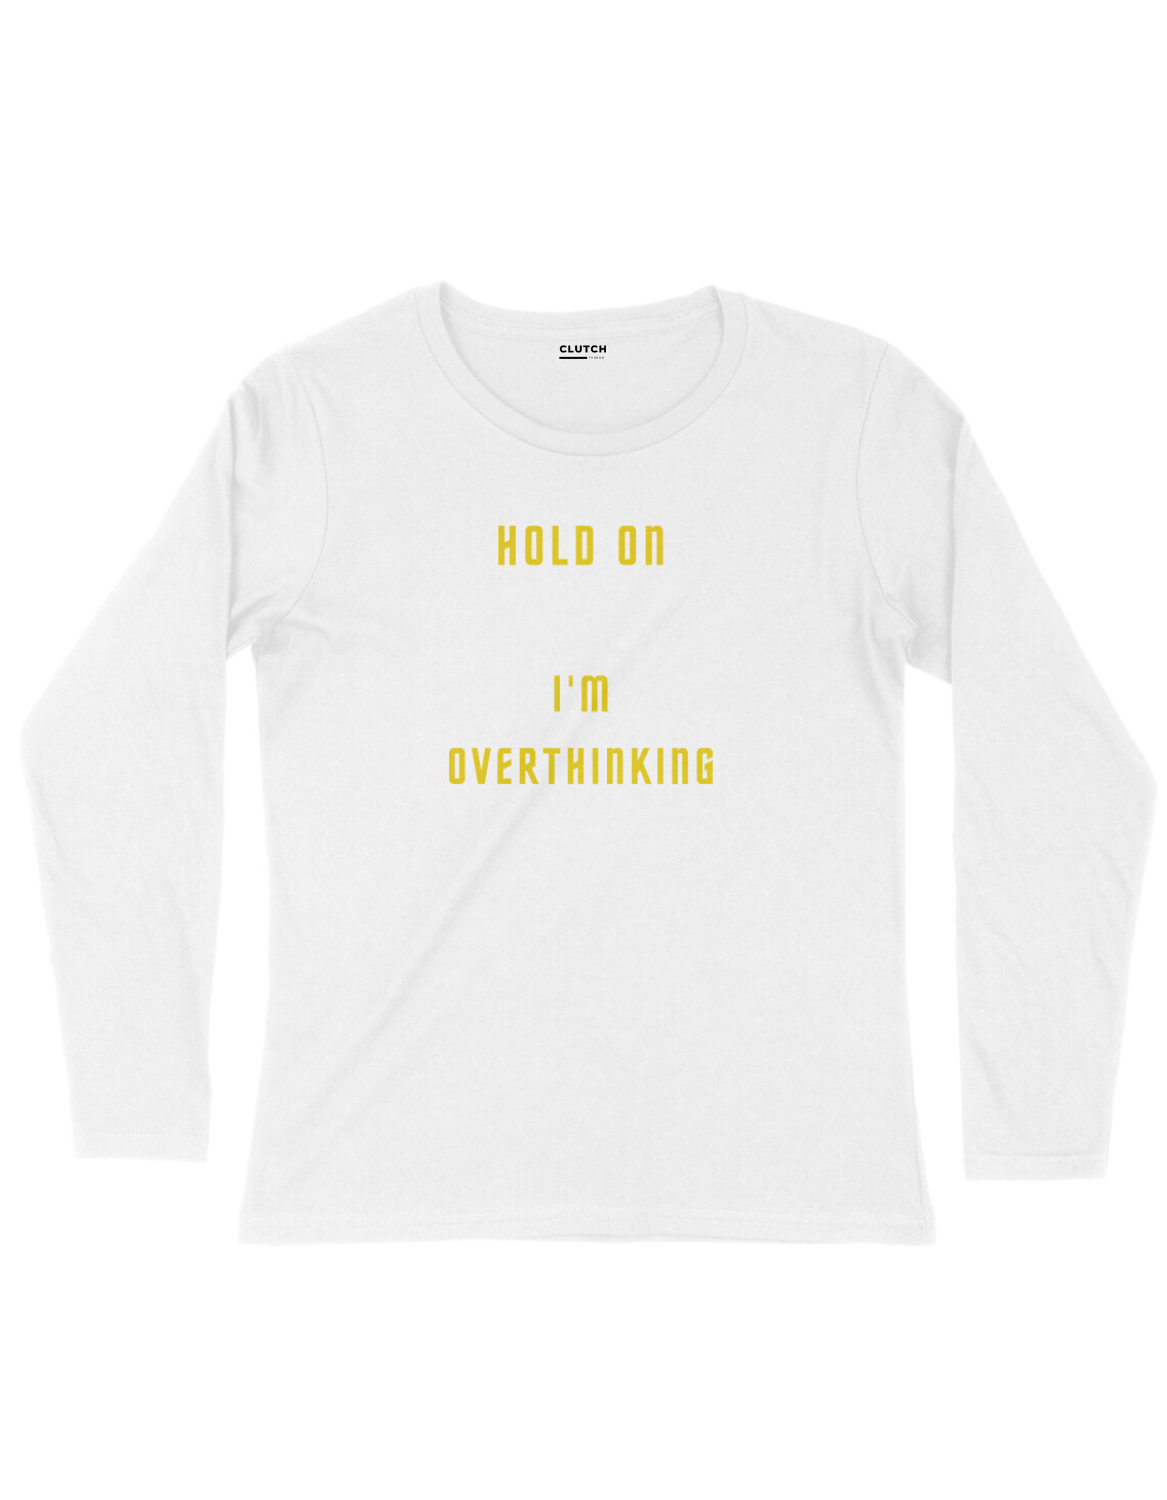 Overthinkin- Full Sleeve T-Shirt